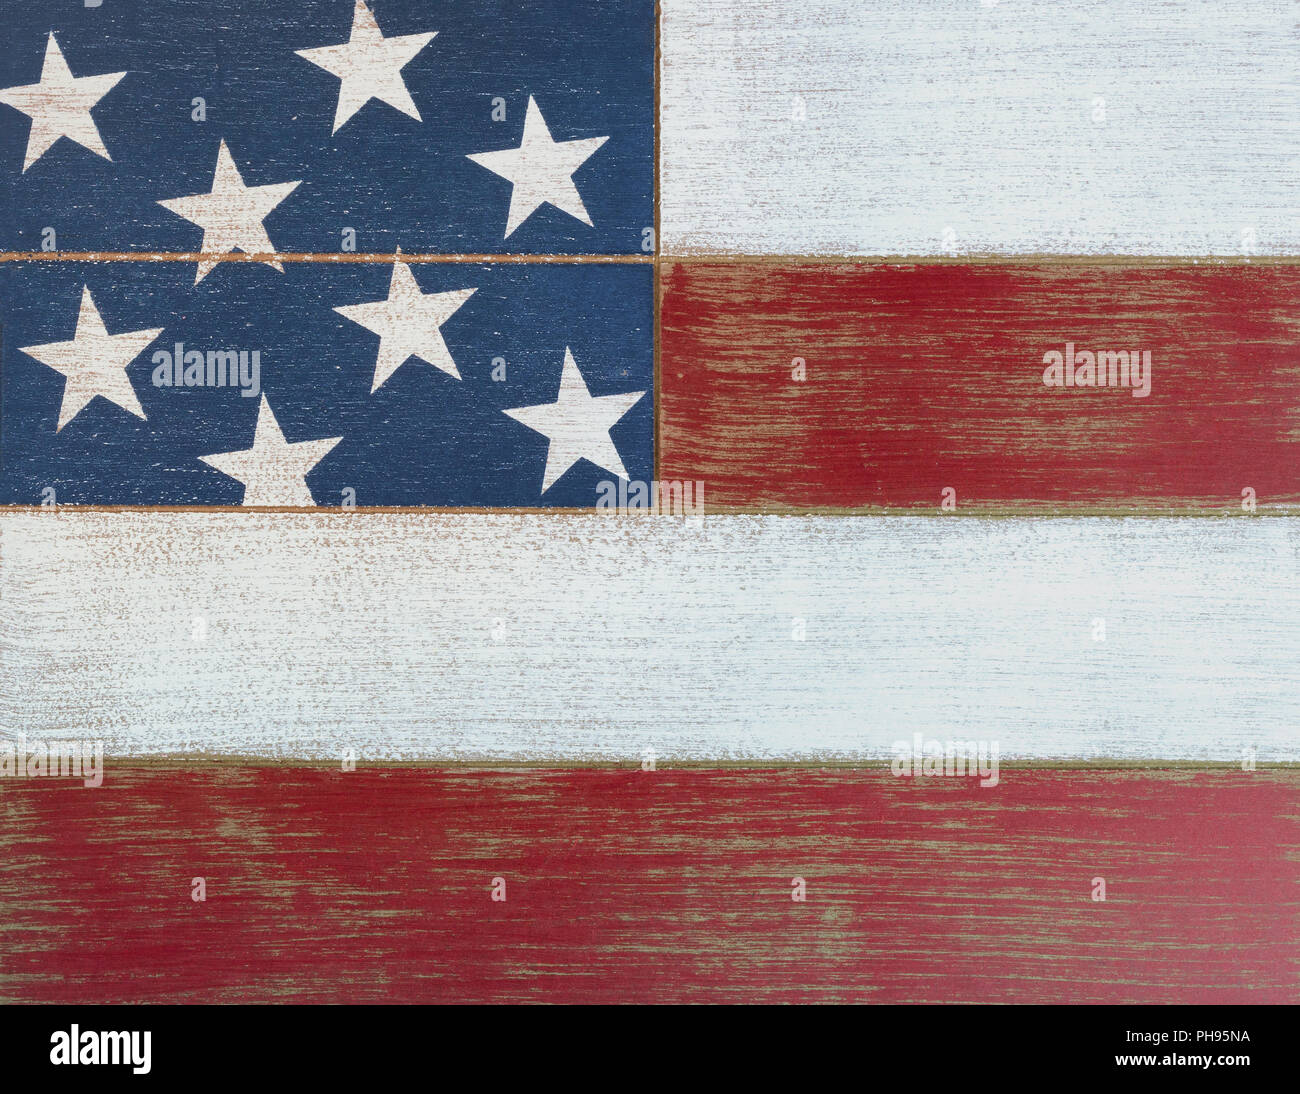 USA couleurs nationales peint sur des planches de bois décoloré Banque D'Images